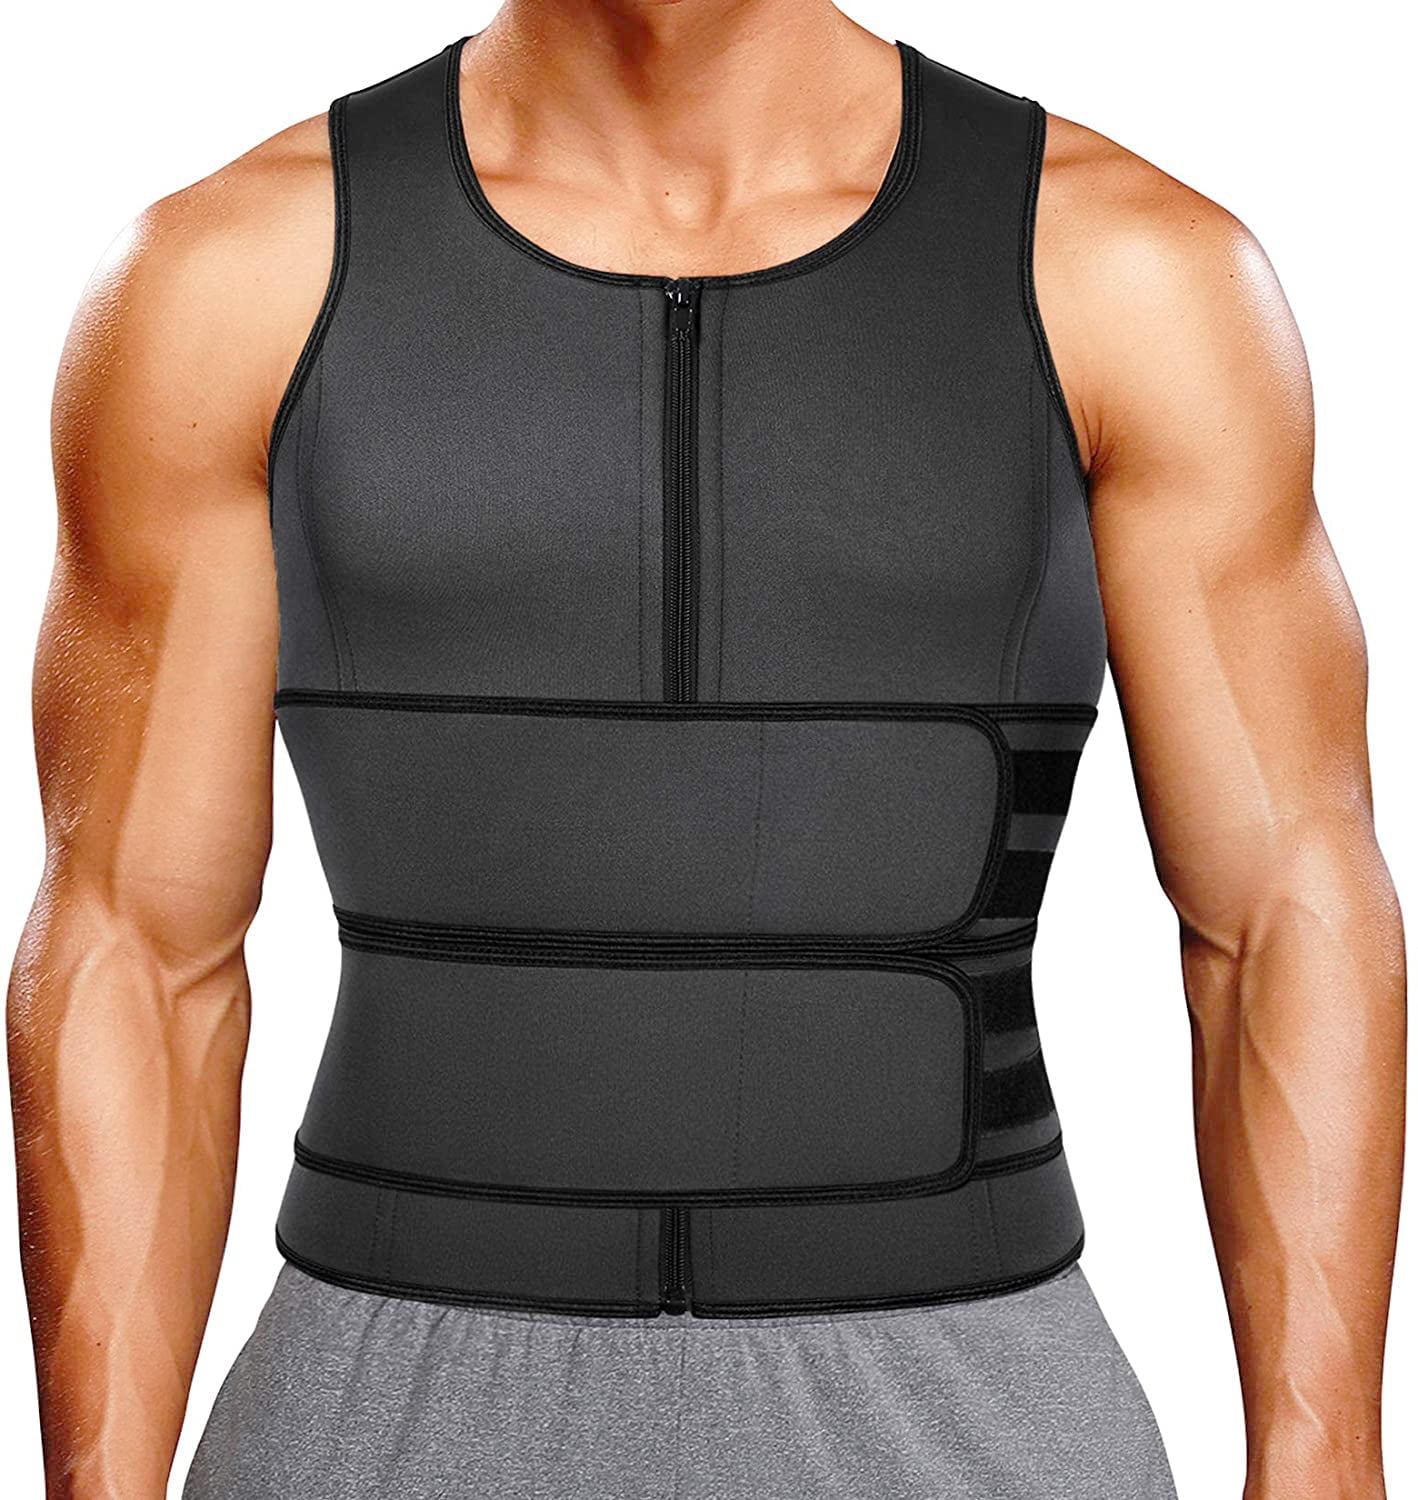 Men's Sauna Suit Sweat Vest Tank Tops Neoprene Waist Trainer Zipper Body Shaper 